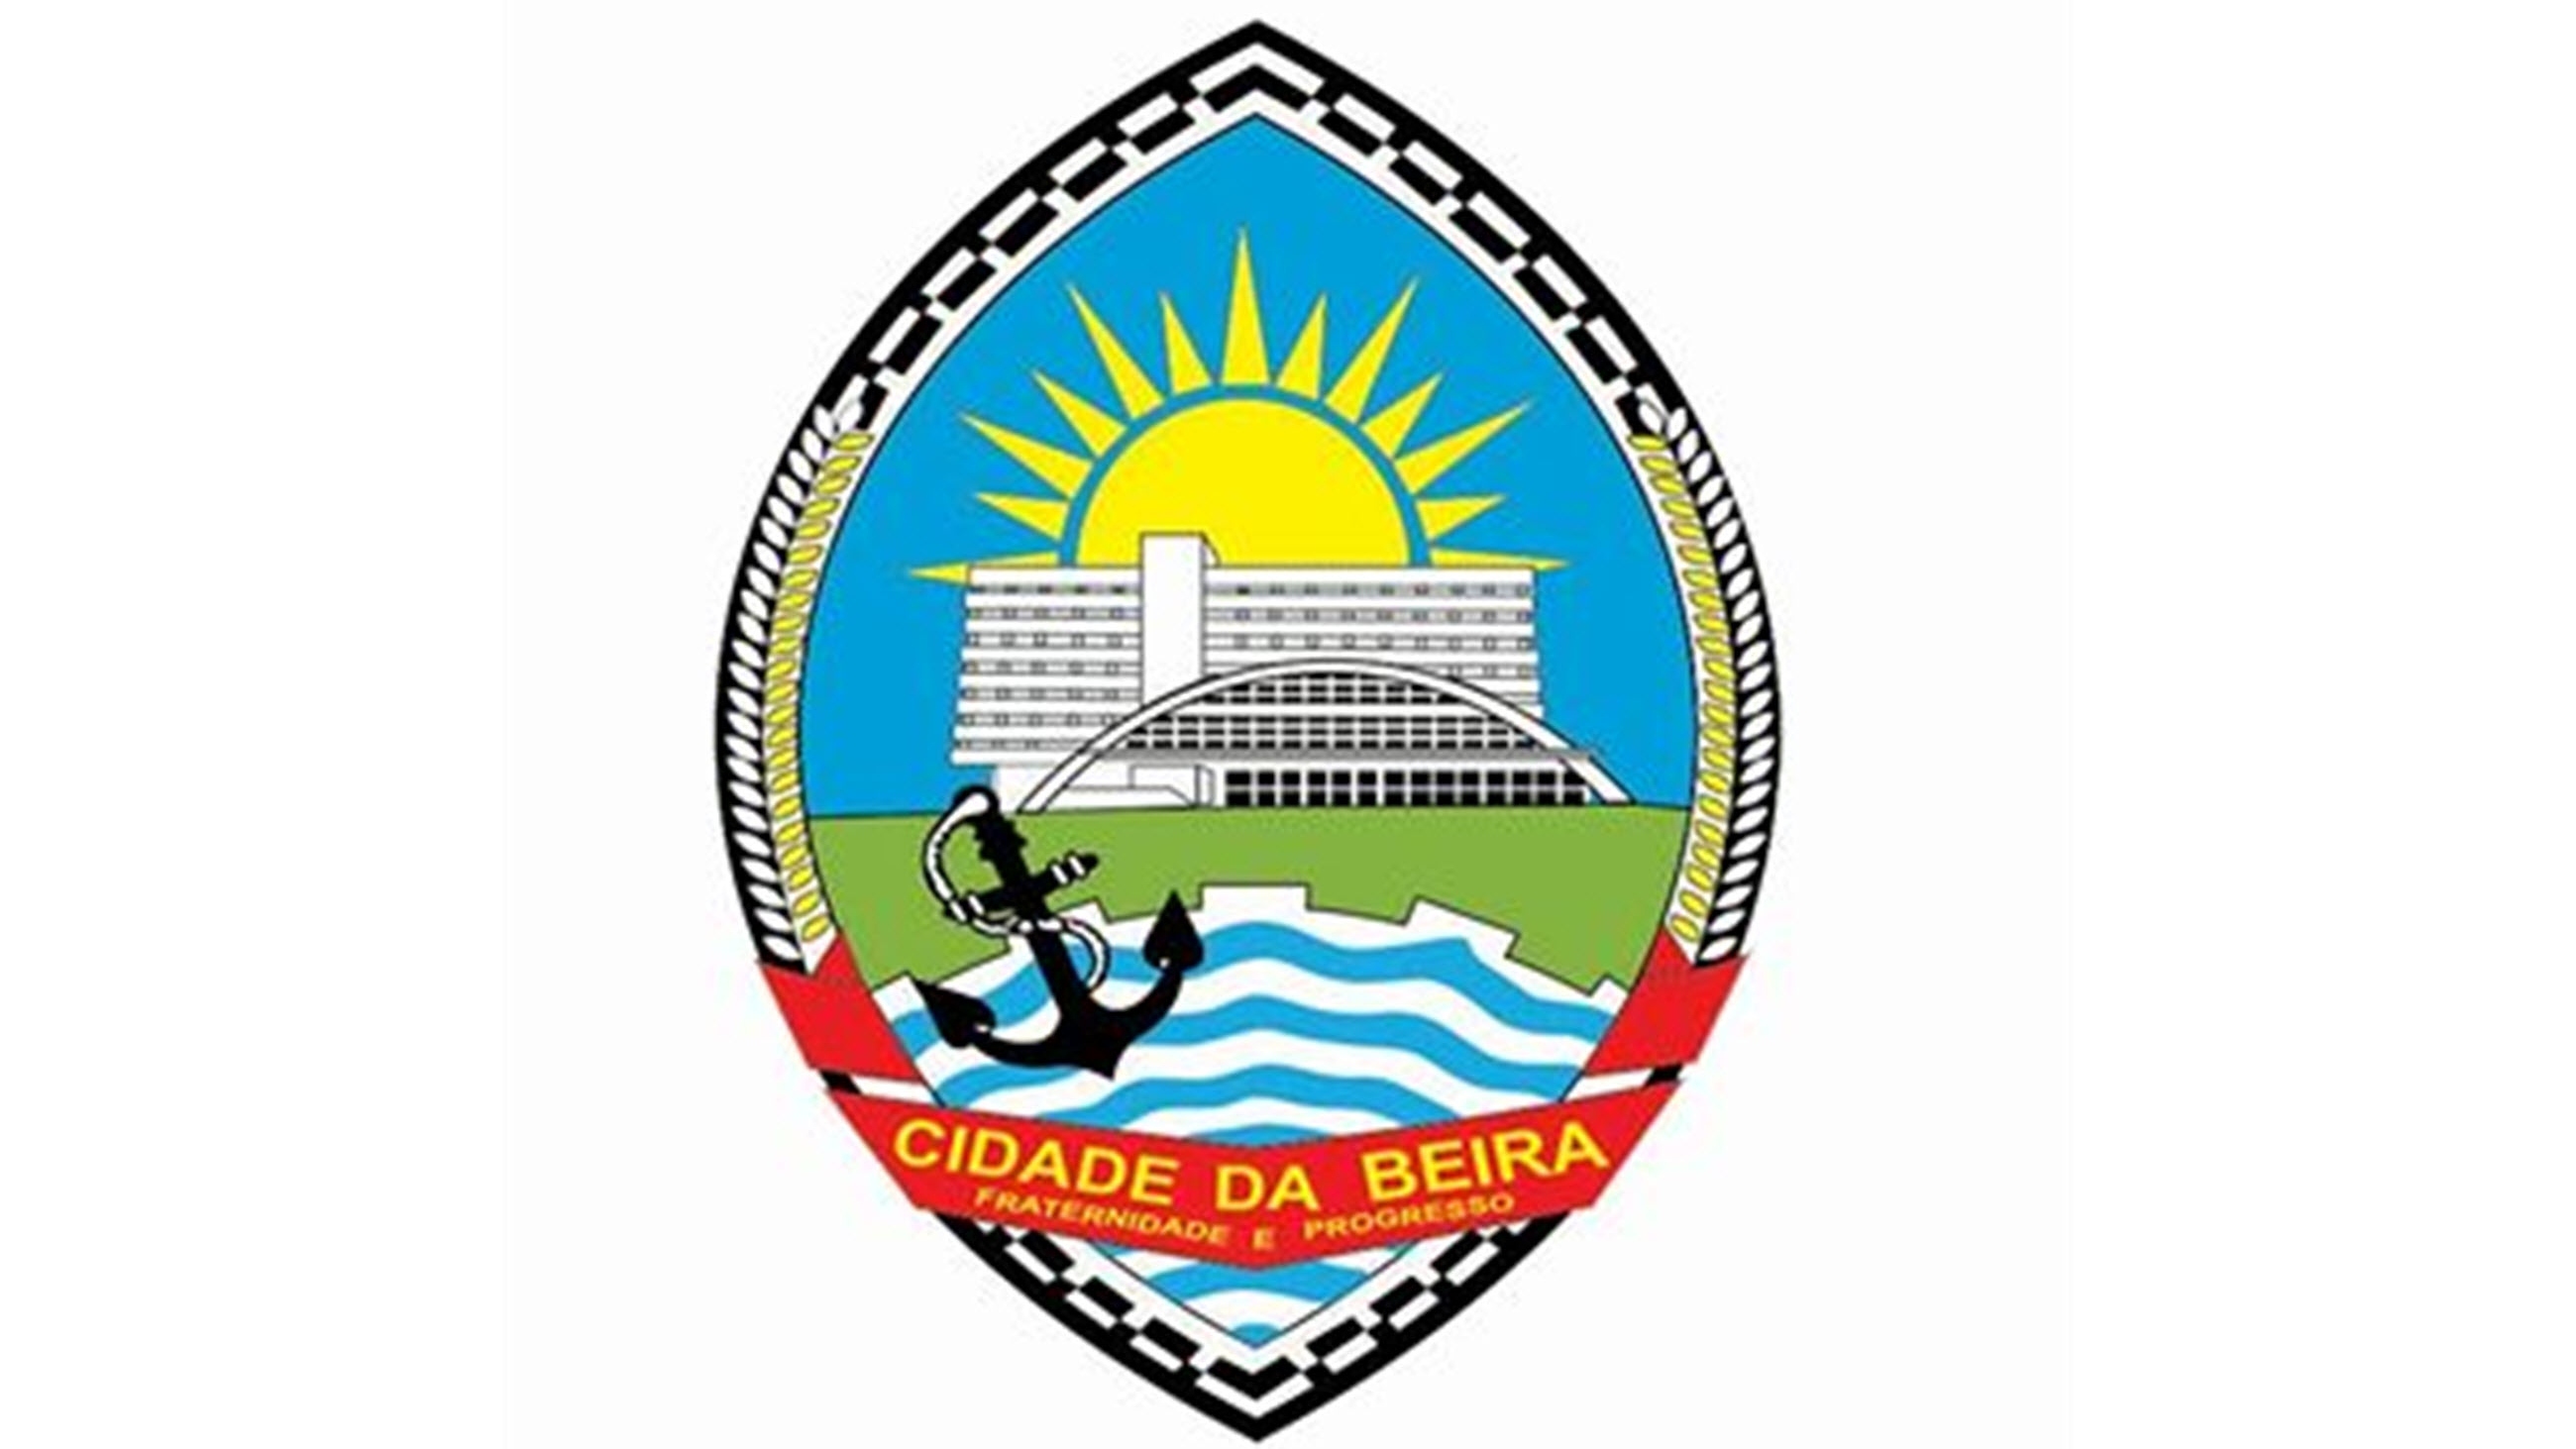 Link to Facebook-page of Conselho Municipal da Beira